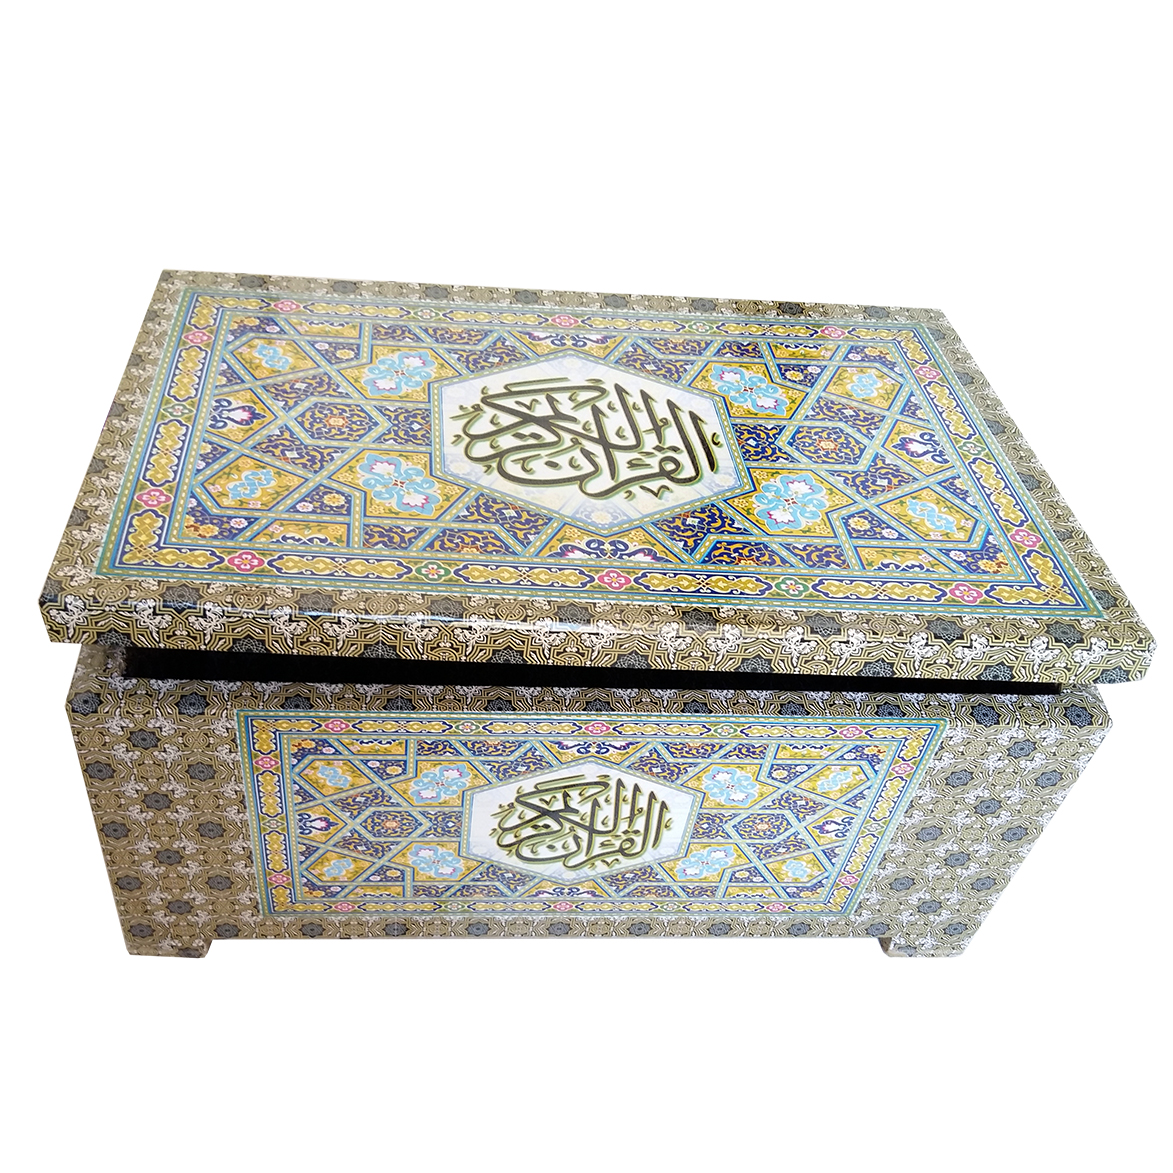 کتاب قرآن 120 حزب خط اشرفی به همراه 2 جعبه رنگ سبز